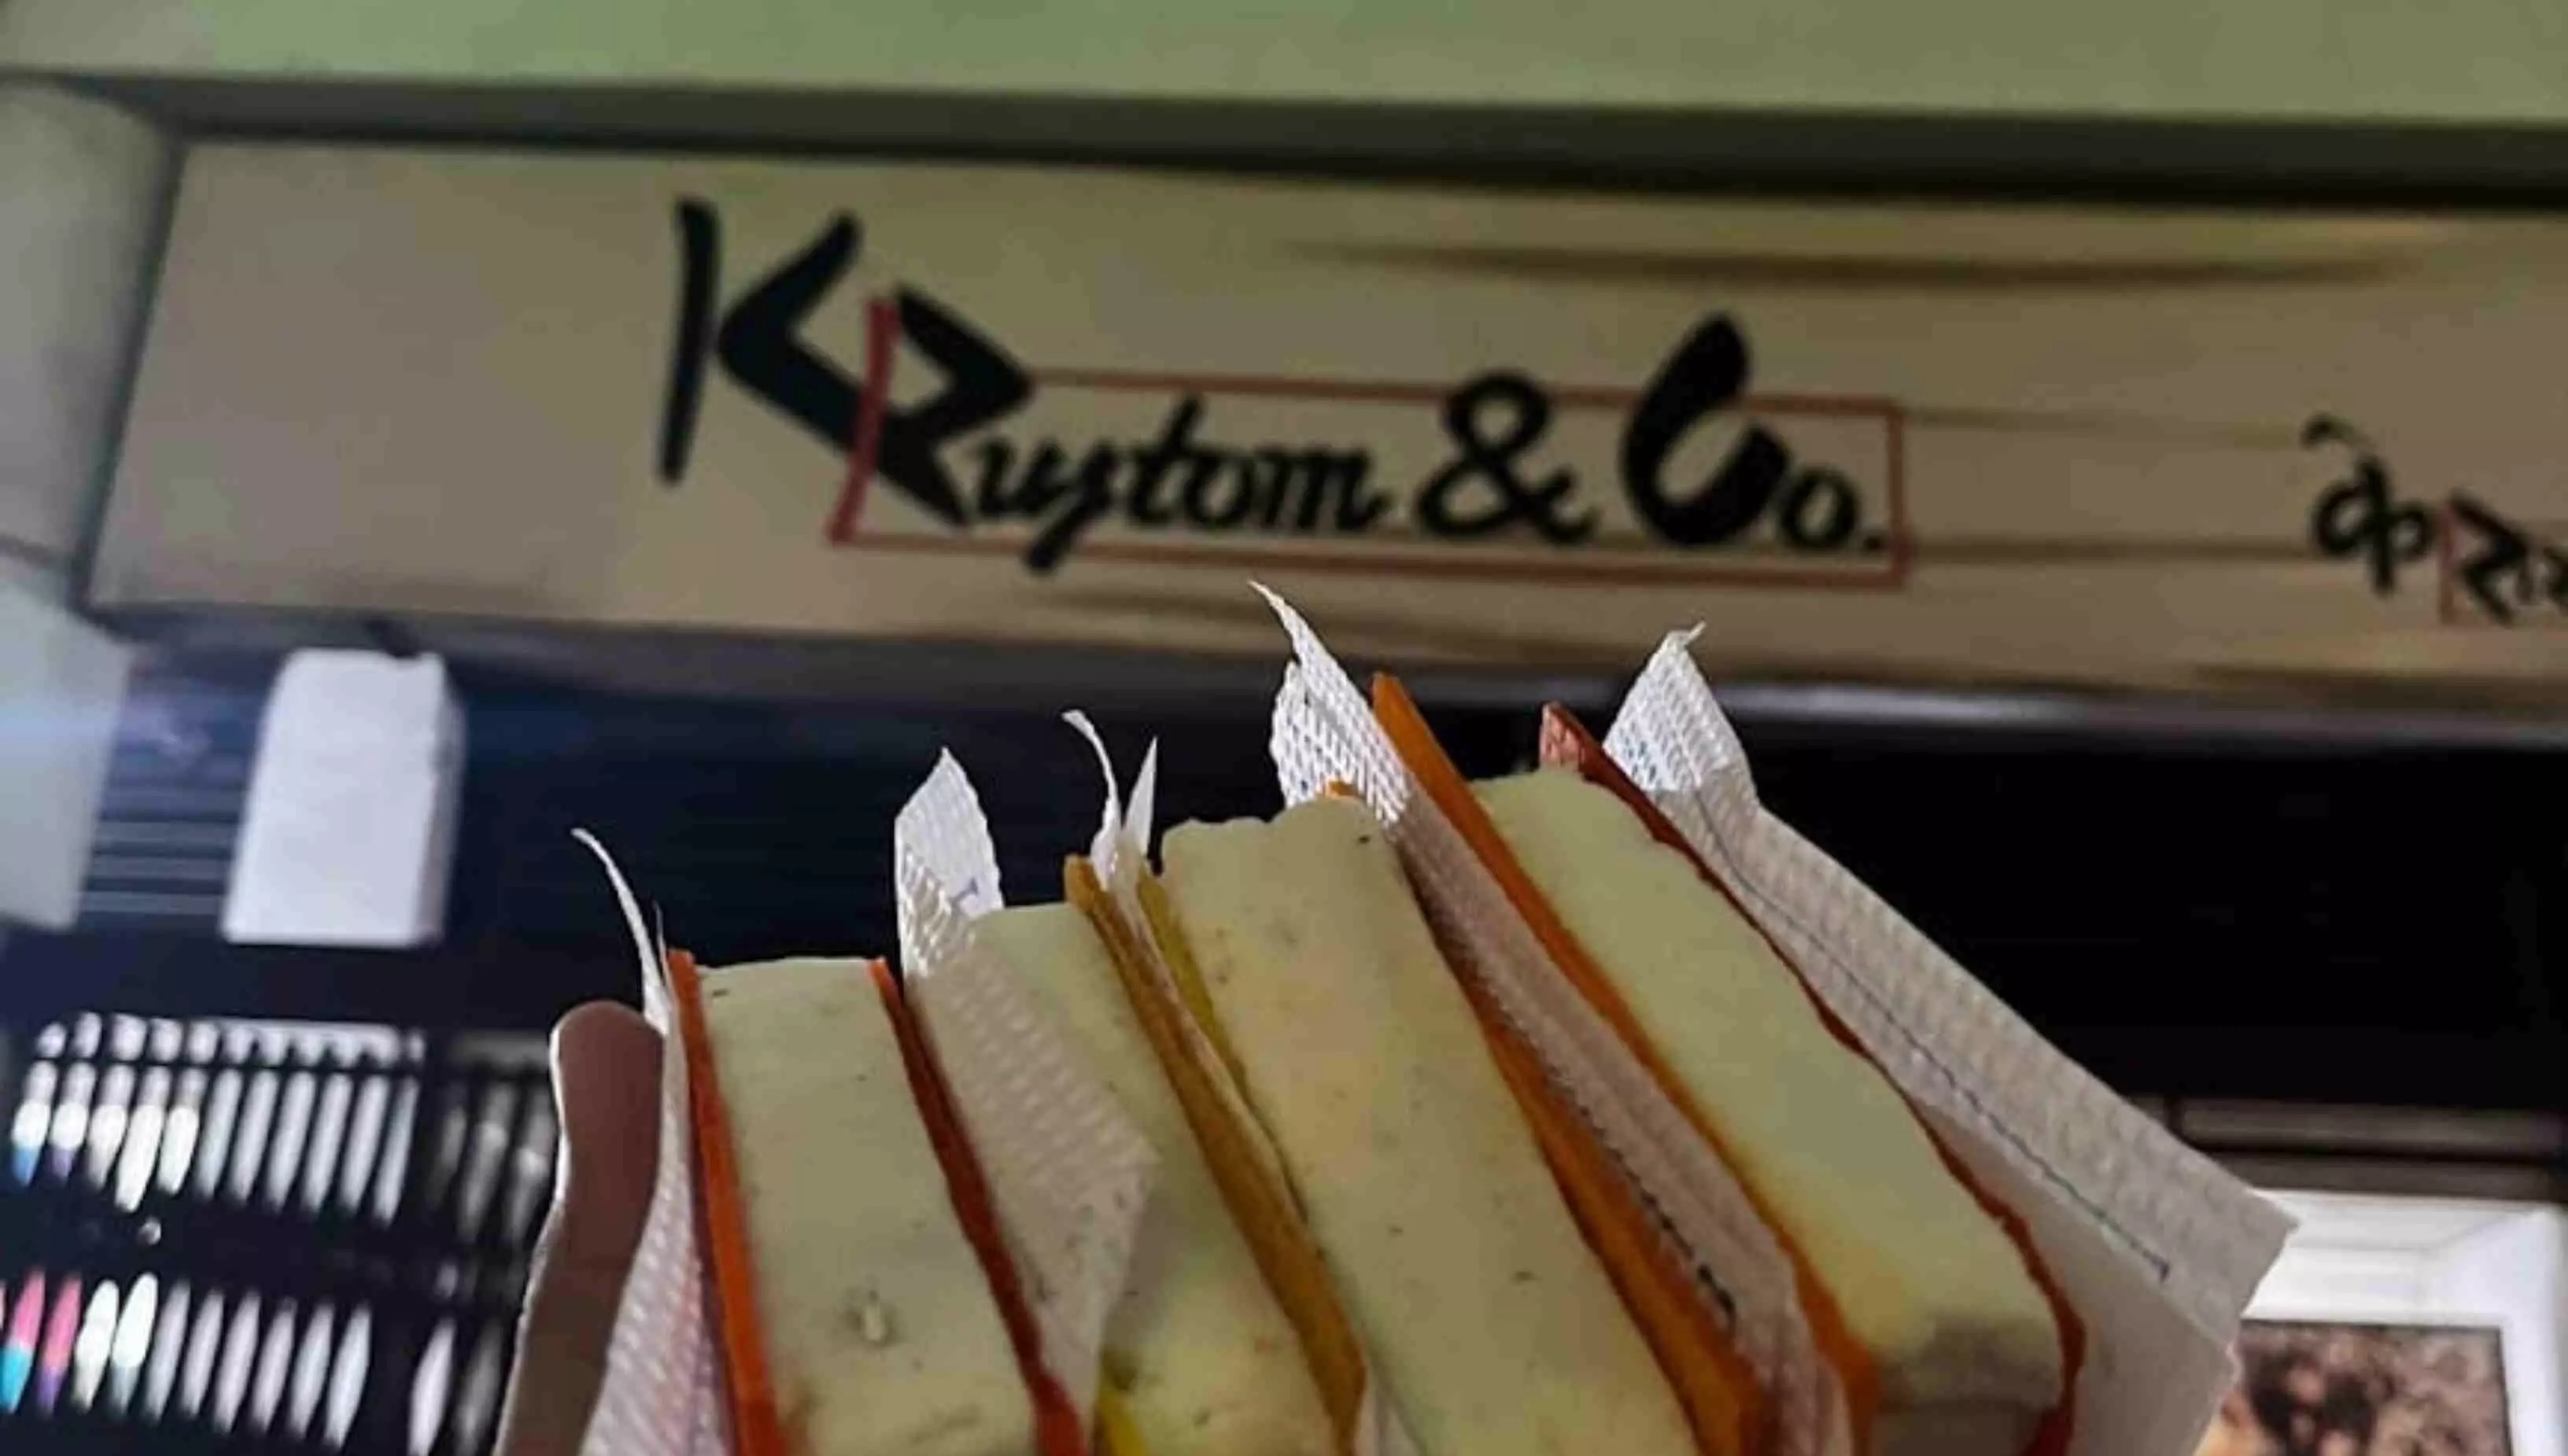 Mumbai Famous Ice Cream: मुंबई में K Rustam का आइसक्रीम क्यों है फेमस, यहां देखें डिटेल्स